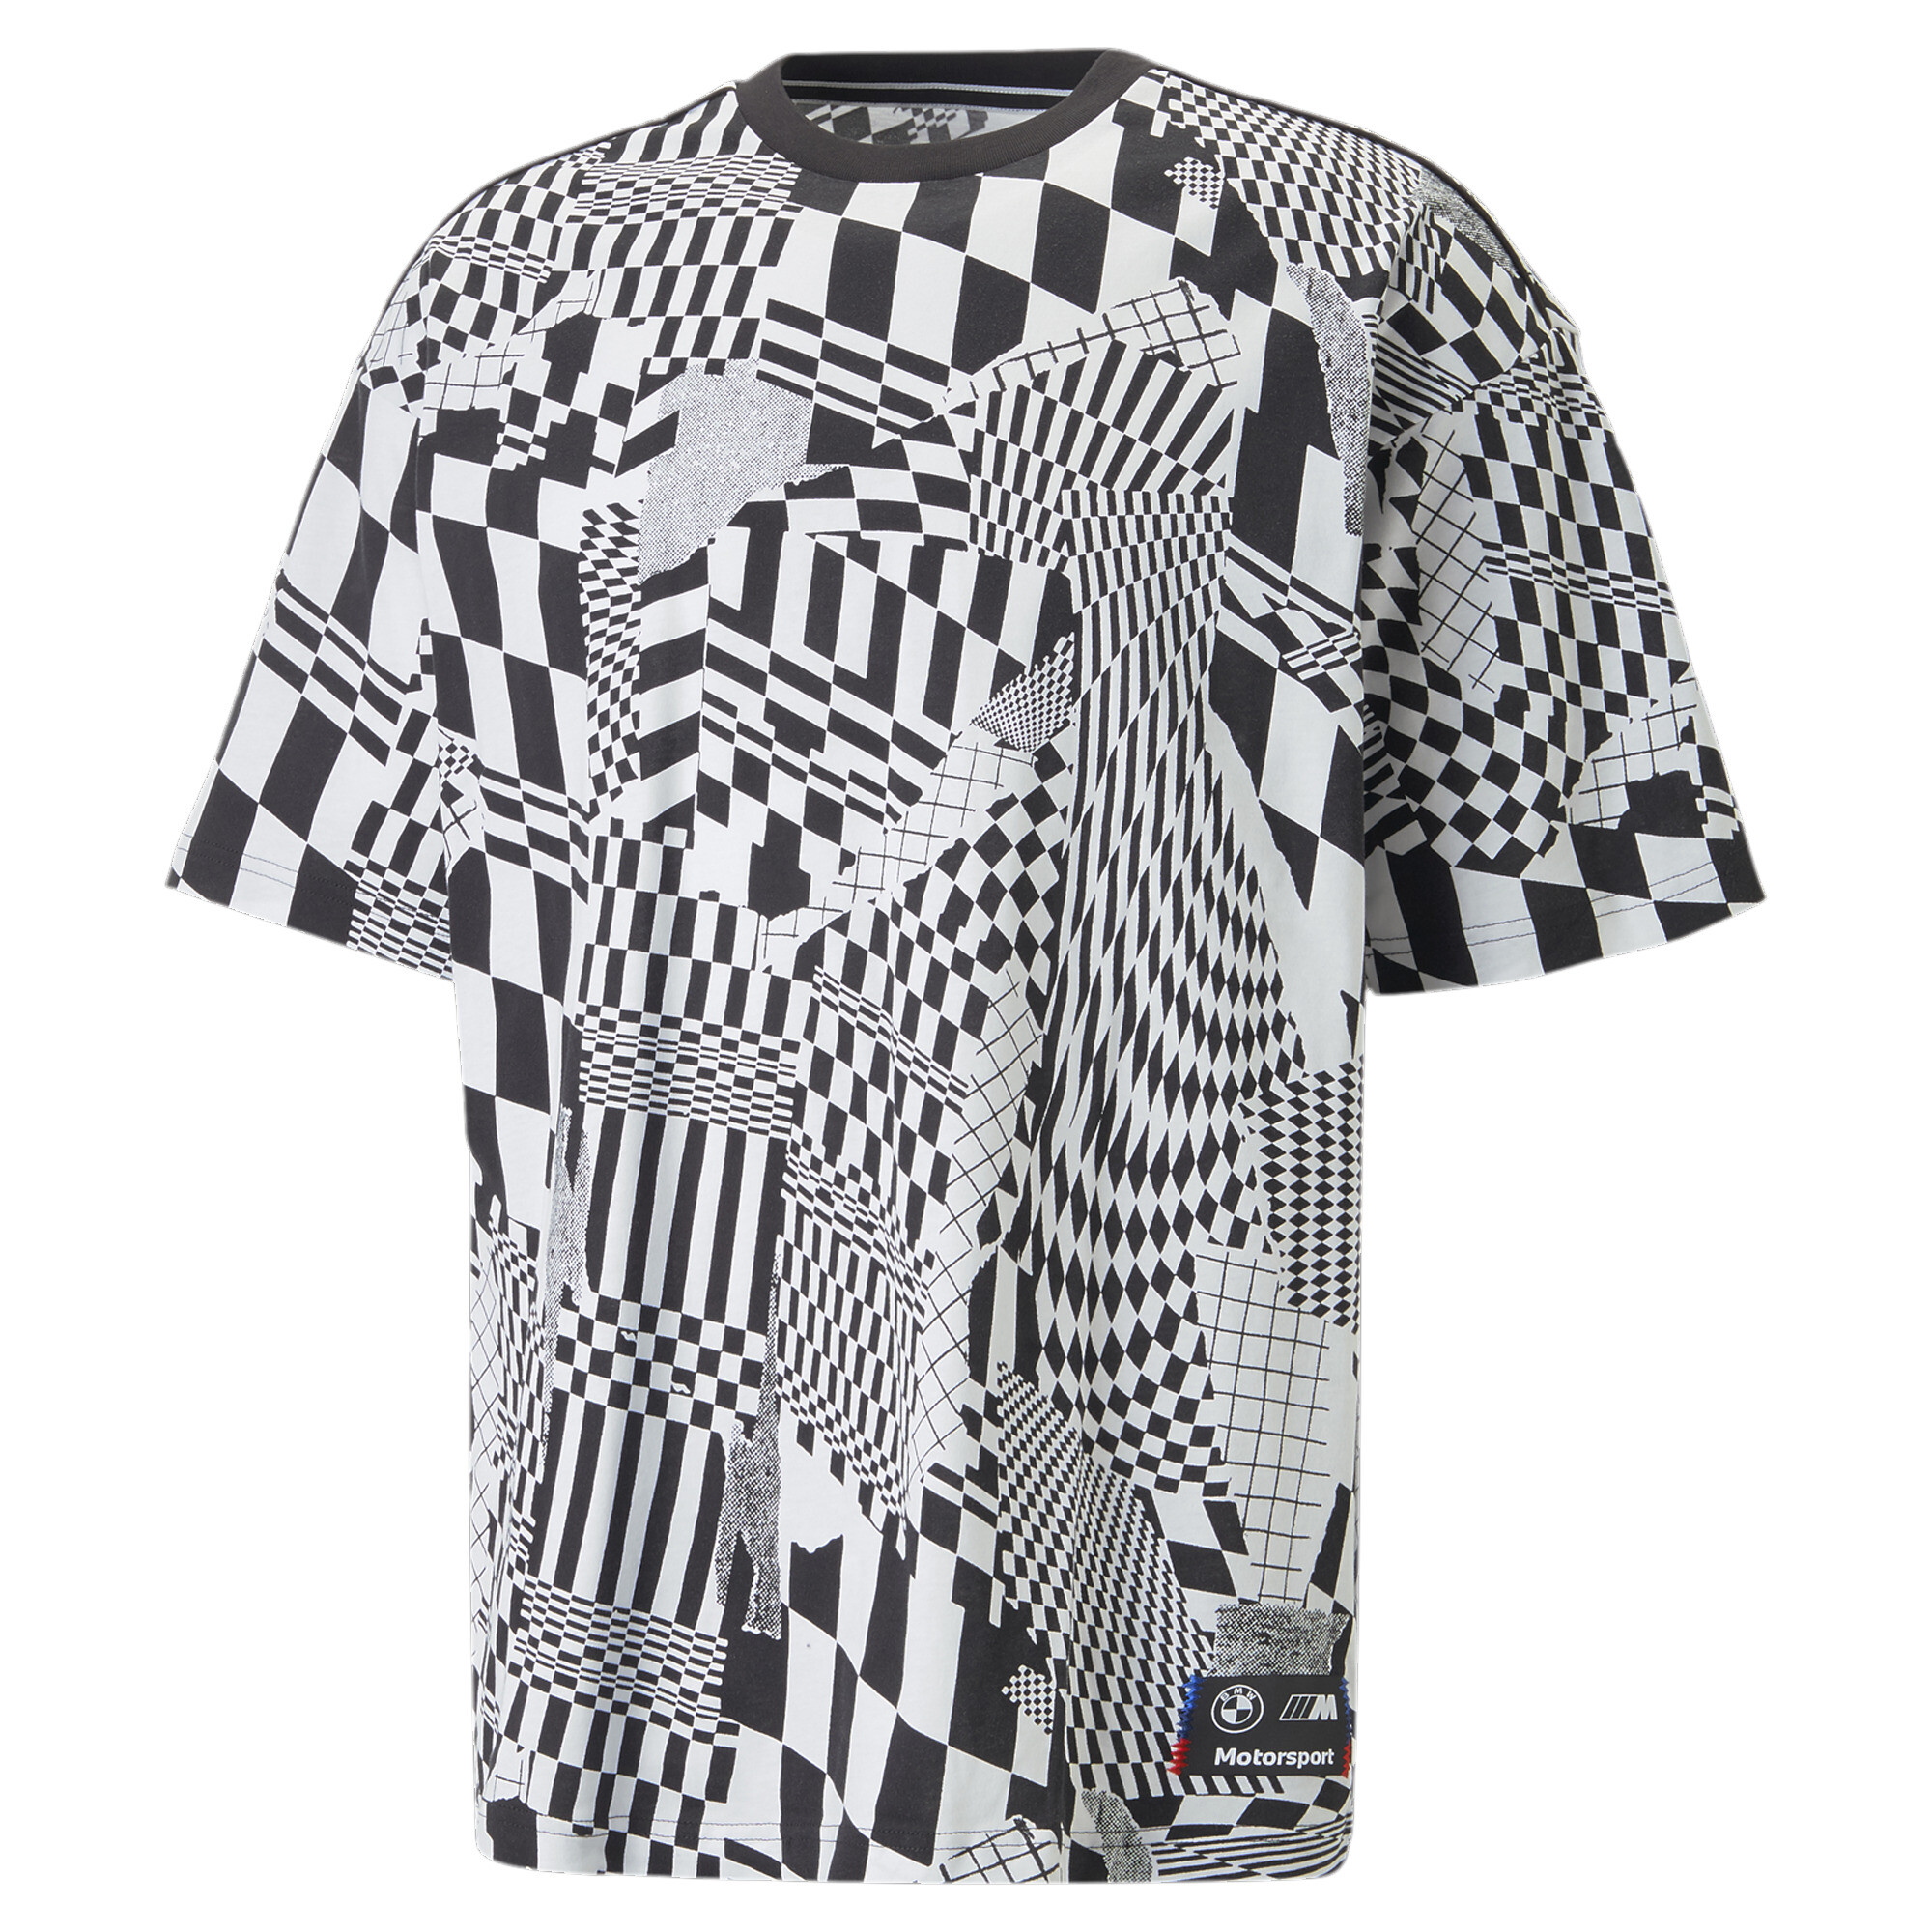 ＜プーマ公式通販＞ プーマ メンズ ACTIVE ビッグ ロゴ 半袖 Tシャツ メンズ Gray Violet ｜PUMA.com